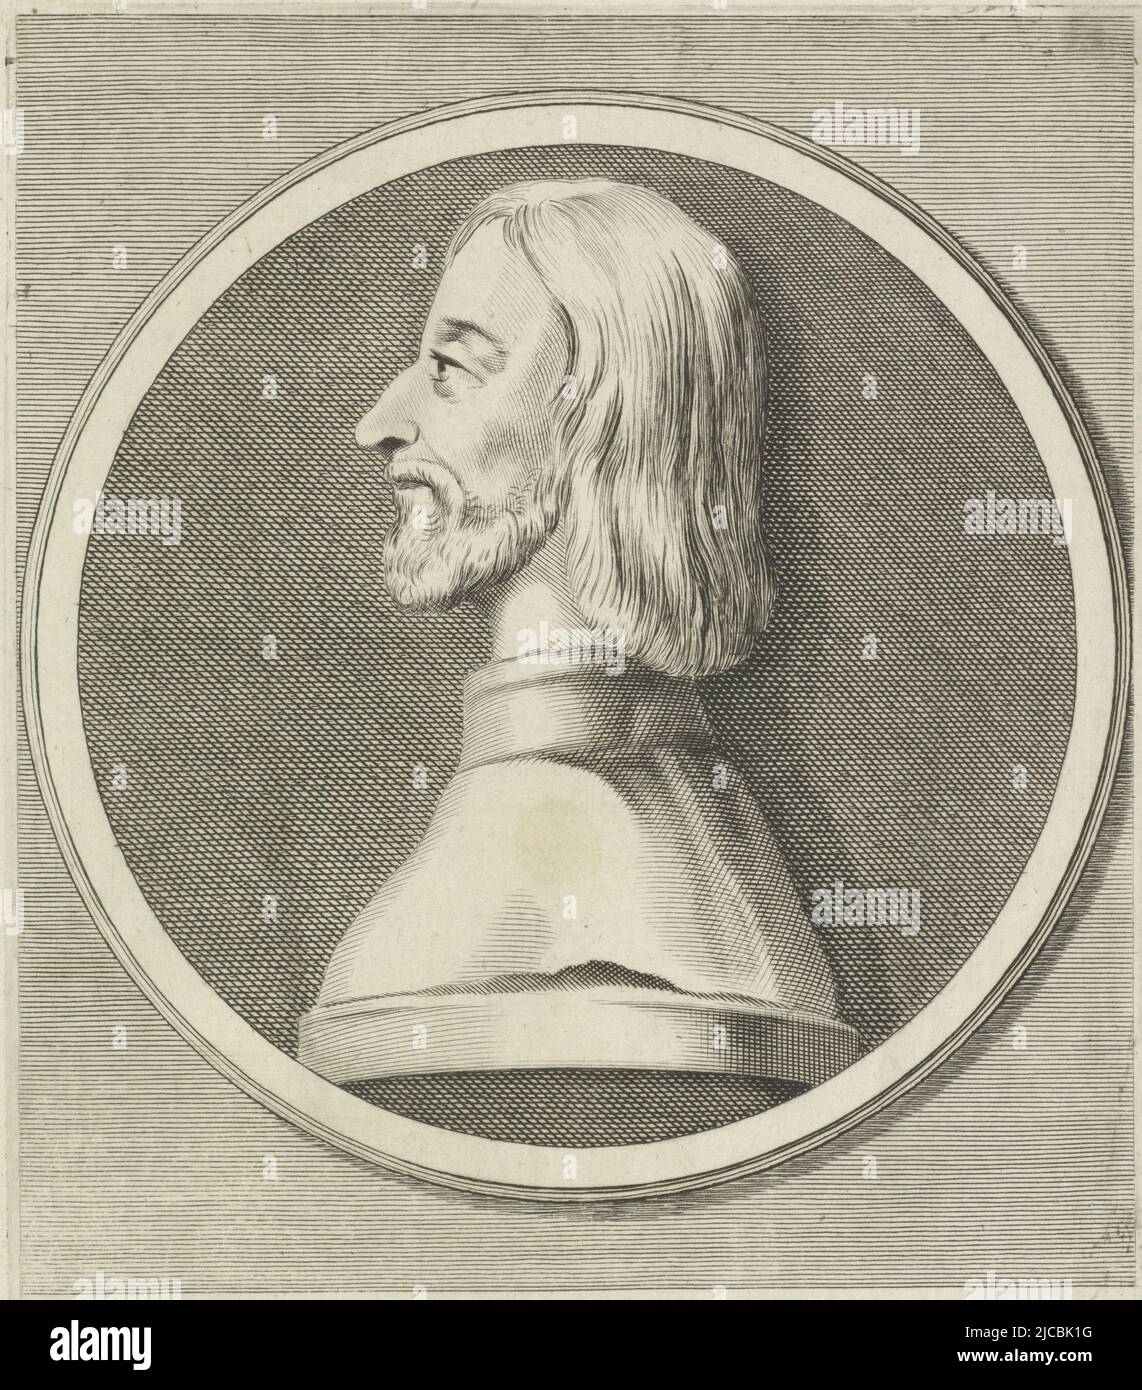 Ritratto di Battista Visconti, tipografia: Giovanni Battista Bonacina, (citato in oggetto), Italia, 1625 - 1669, carta, incisione, incisione, h 220 mm x l 160 mm Foto Stock